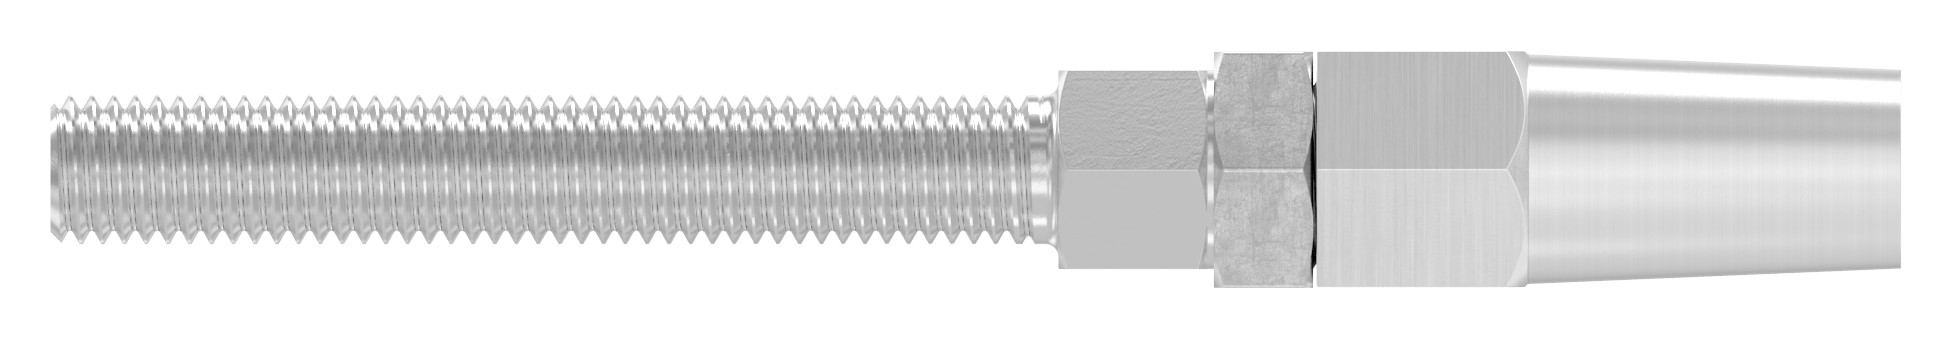 Gewindeterminal zur Selbstmontage für Seil Ø 6mm, V4A